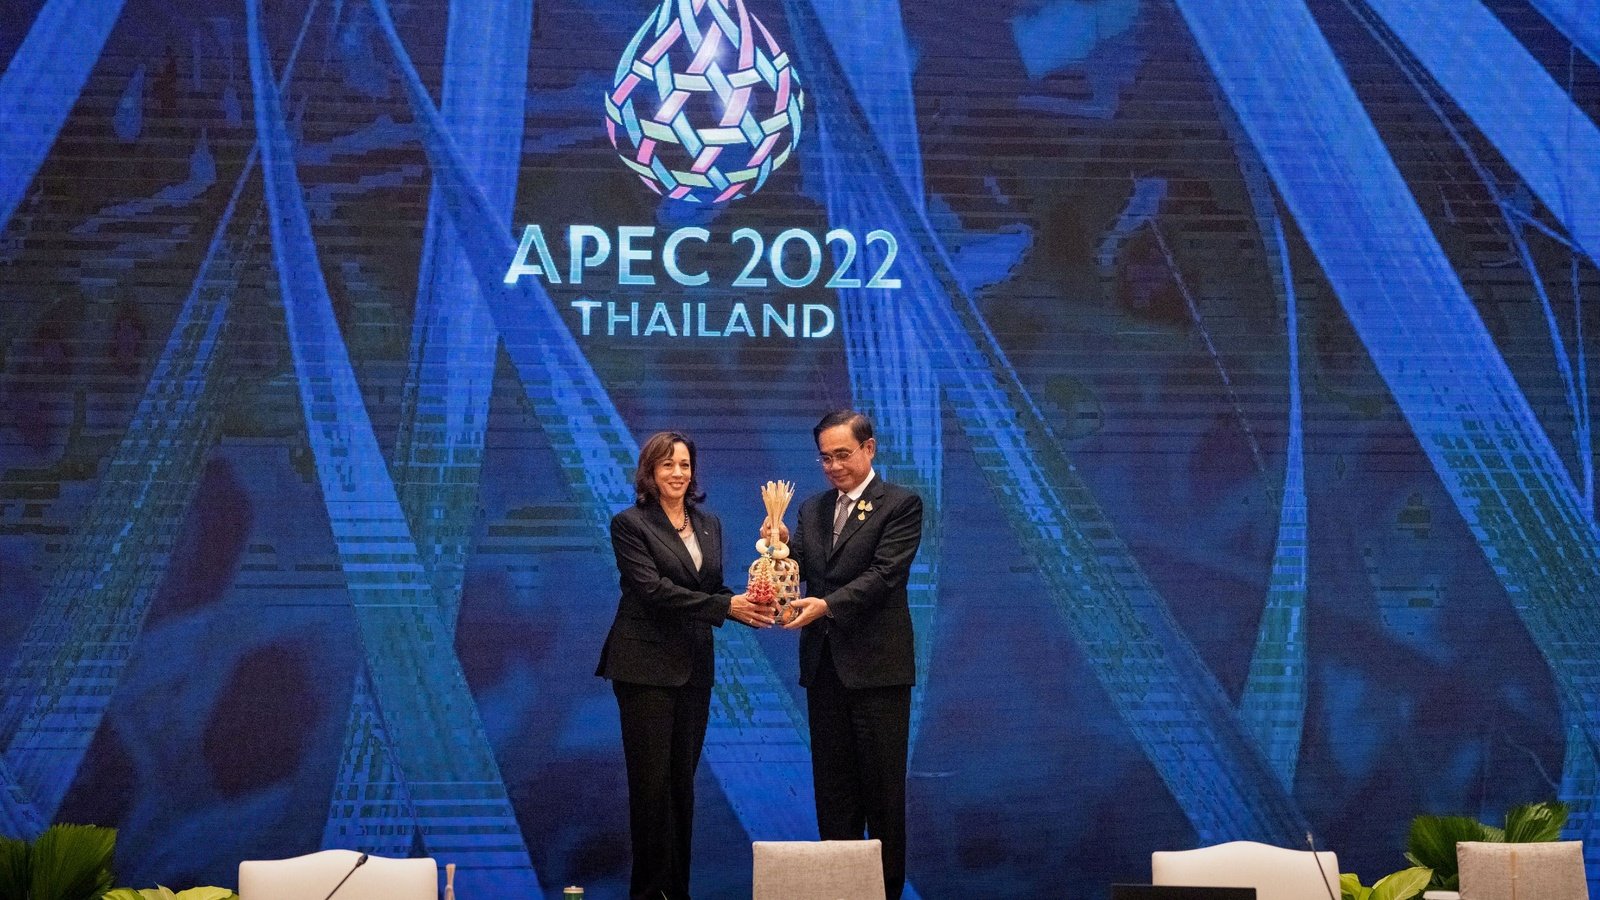 アジア太平洋経済協力体首脳会議の潜在的な緊張と結果の評価